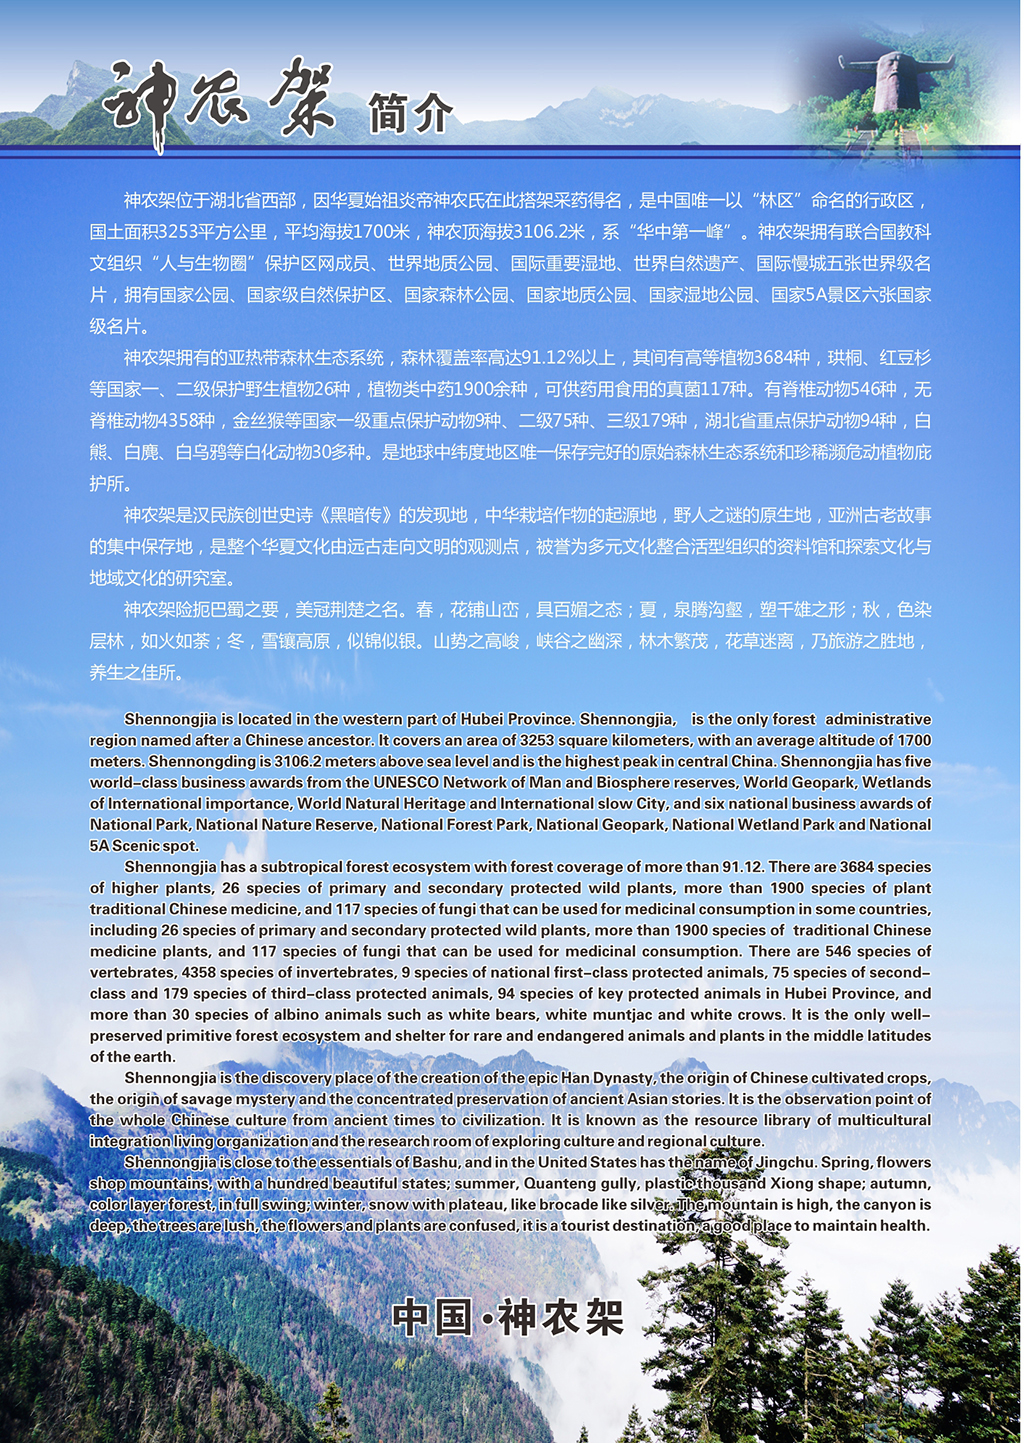 神农架林区文化和旅游局